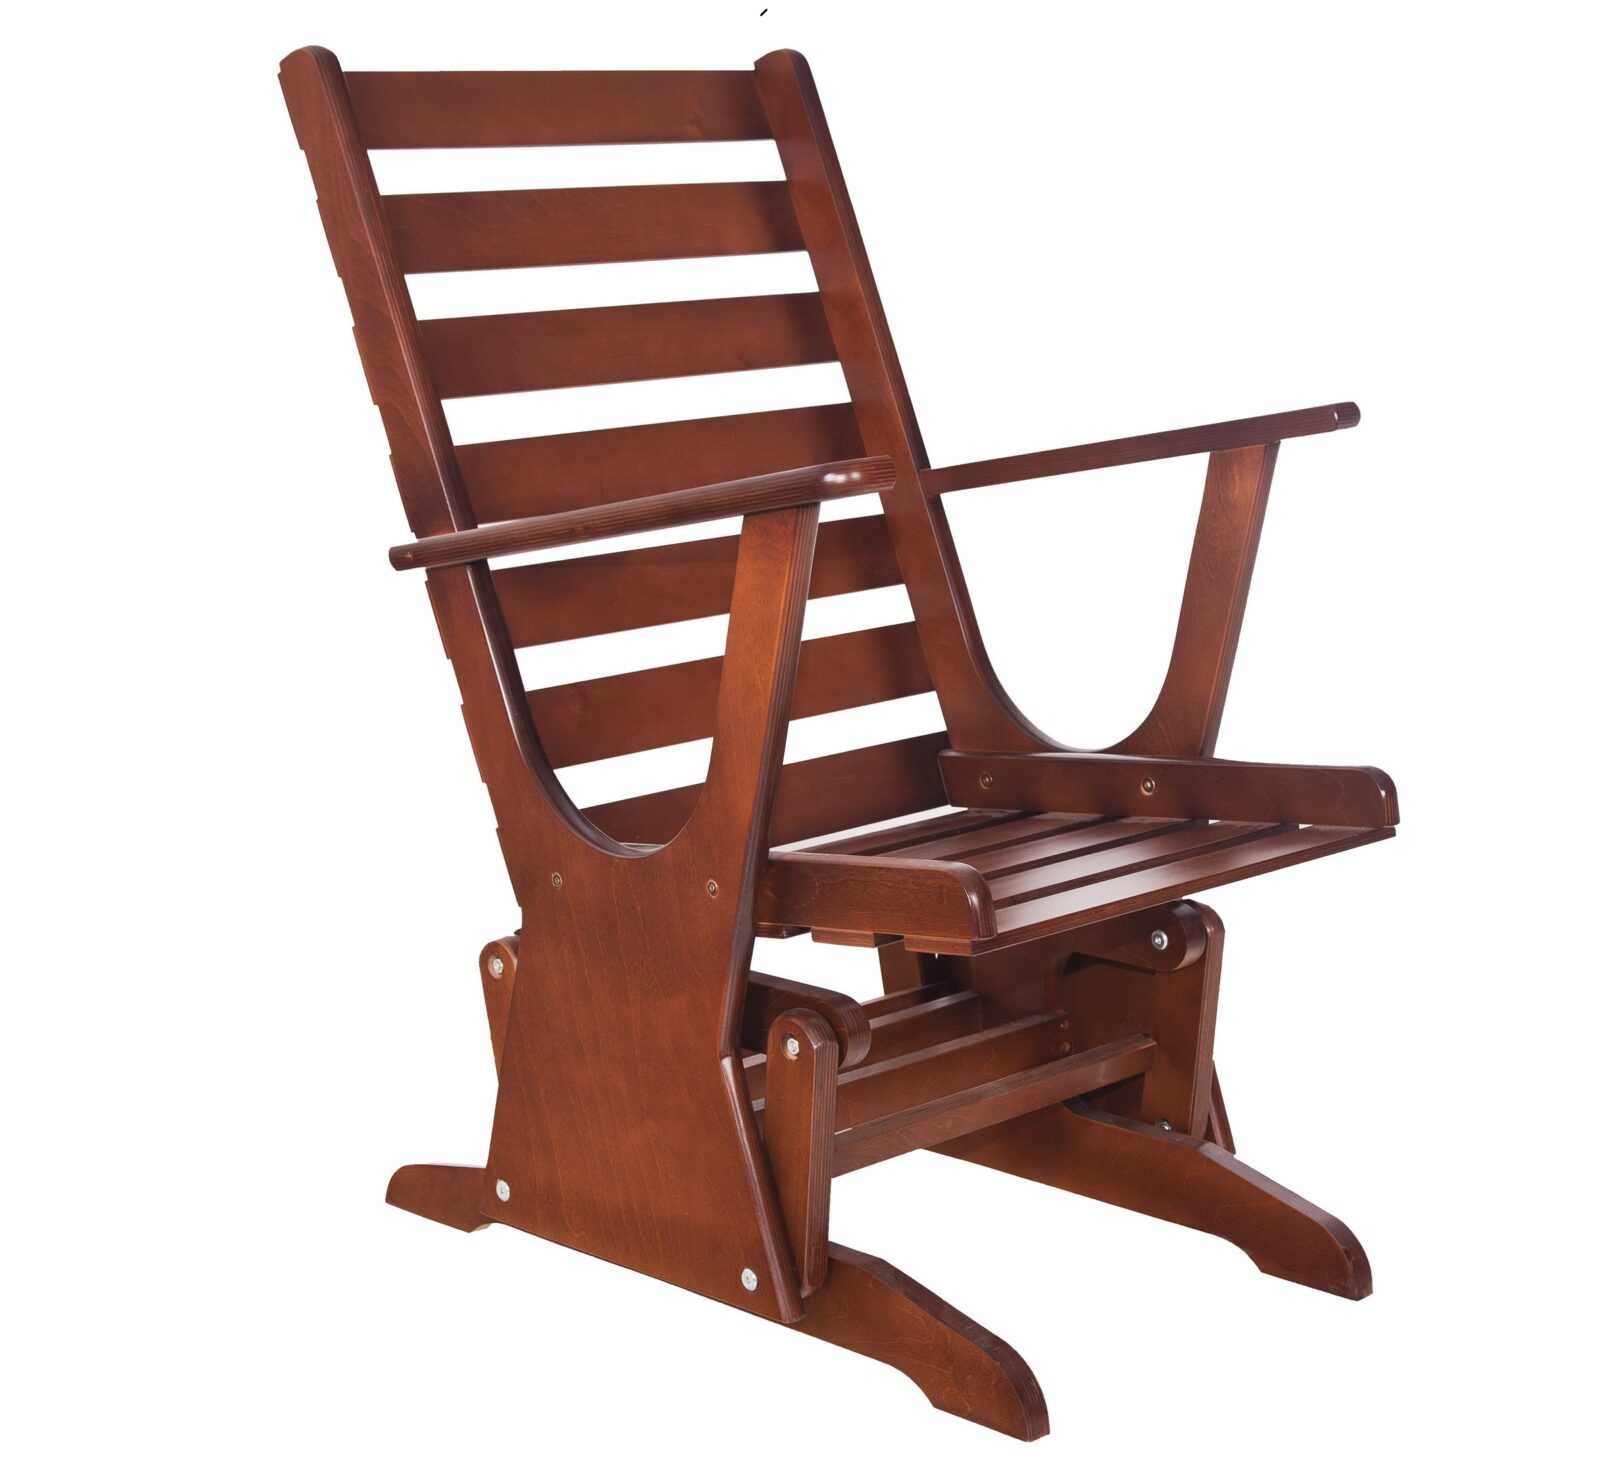 Пошаговое изготовление простого кресла-маятника из дерева или металла 1 - ДиванеТТо